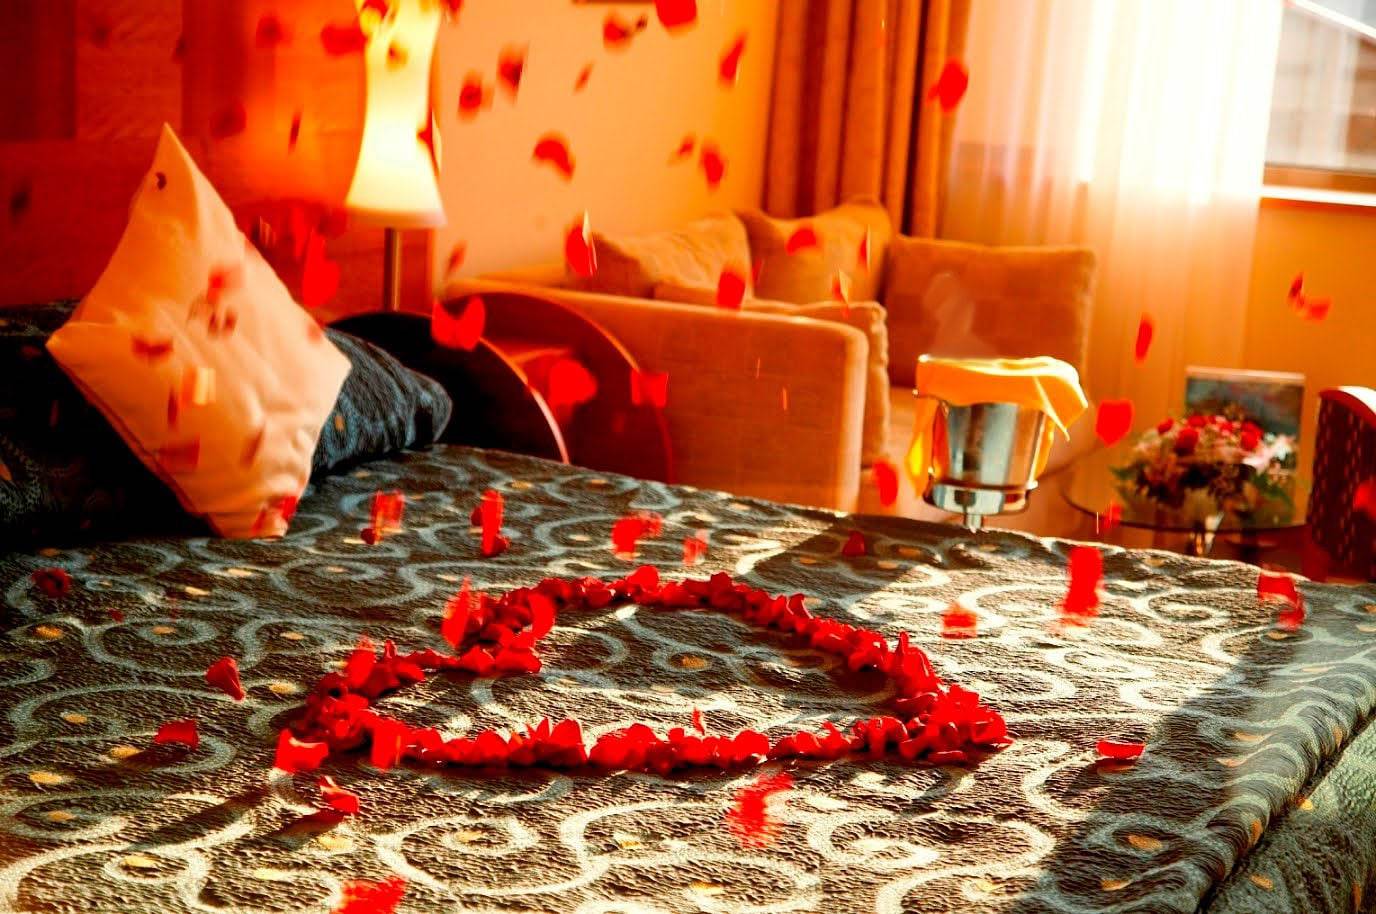 ترتيب غرفة النوم بطريقة رومانسية